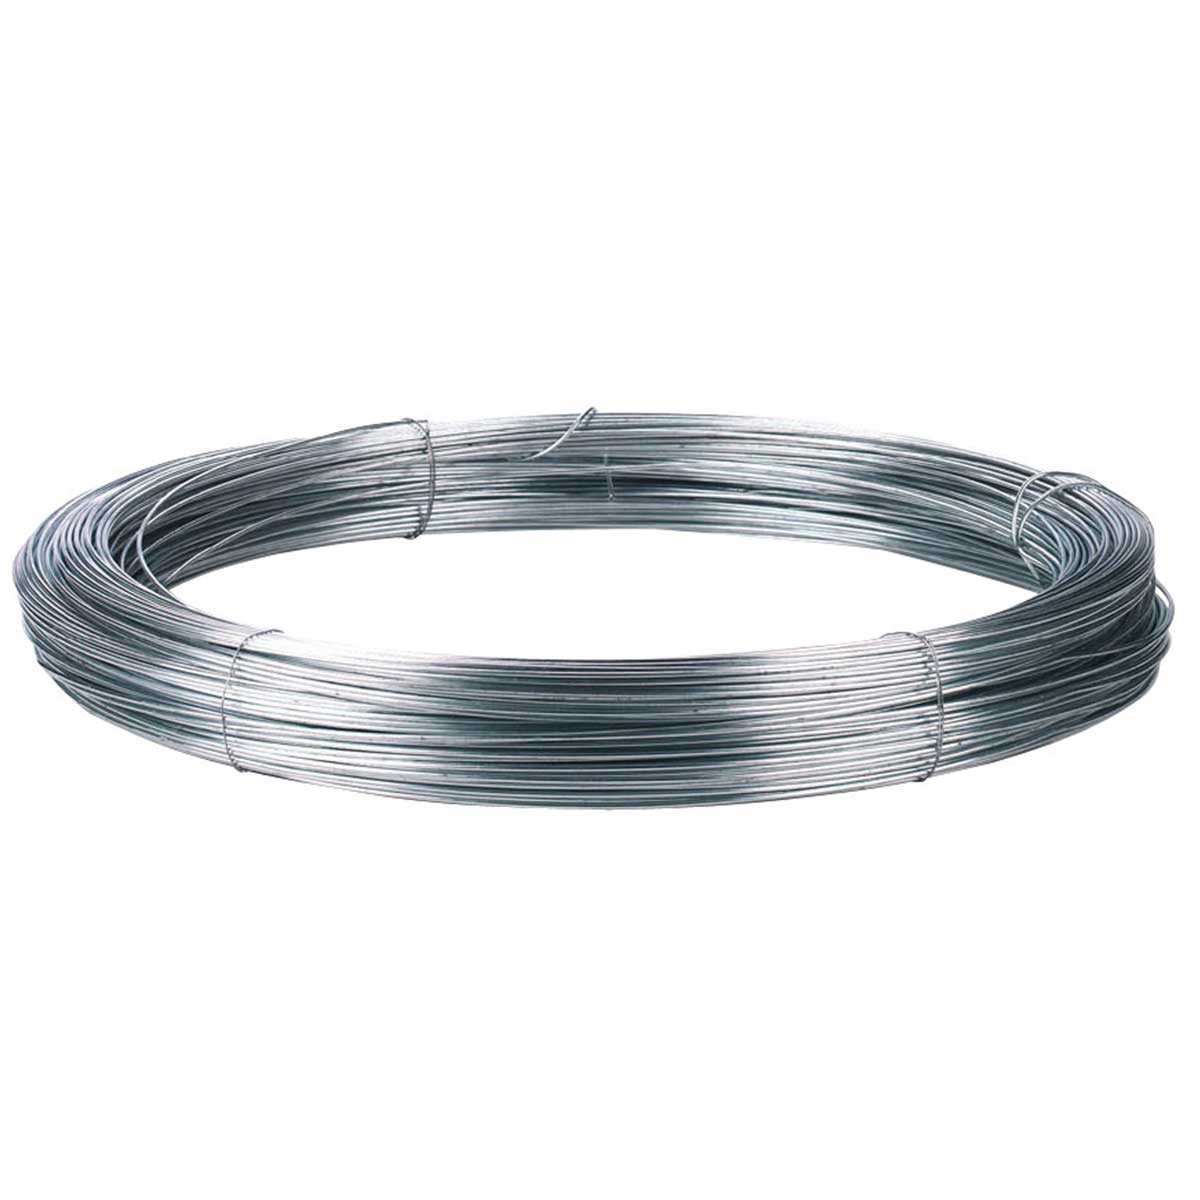 Iron wire galvanized 1,8 mm